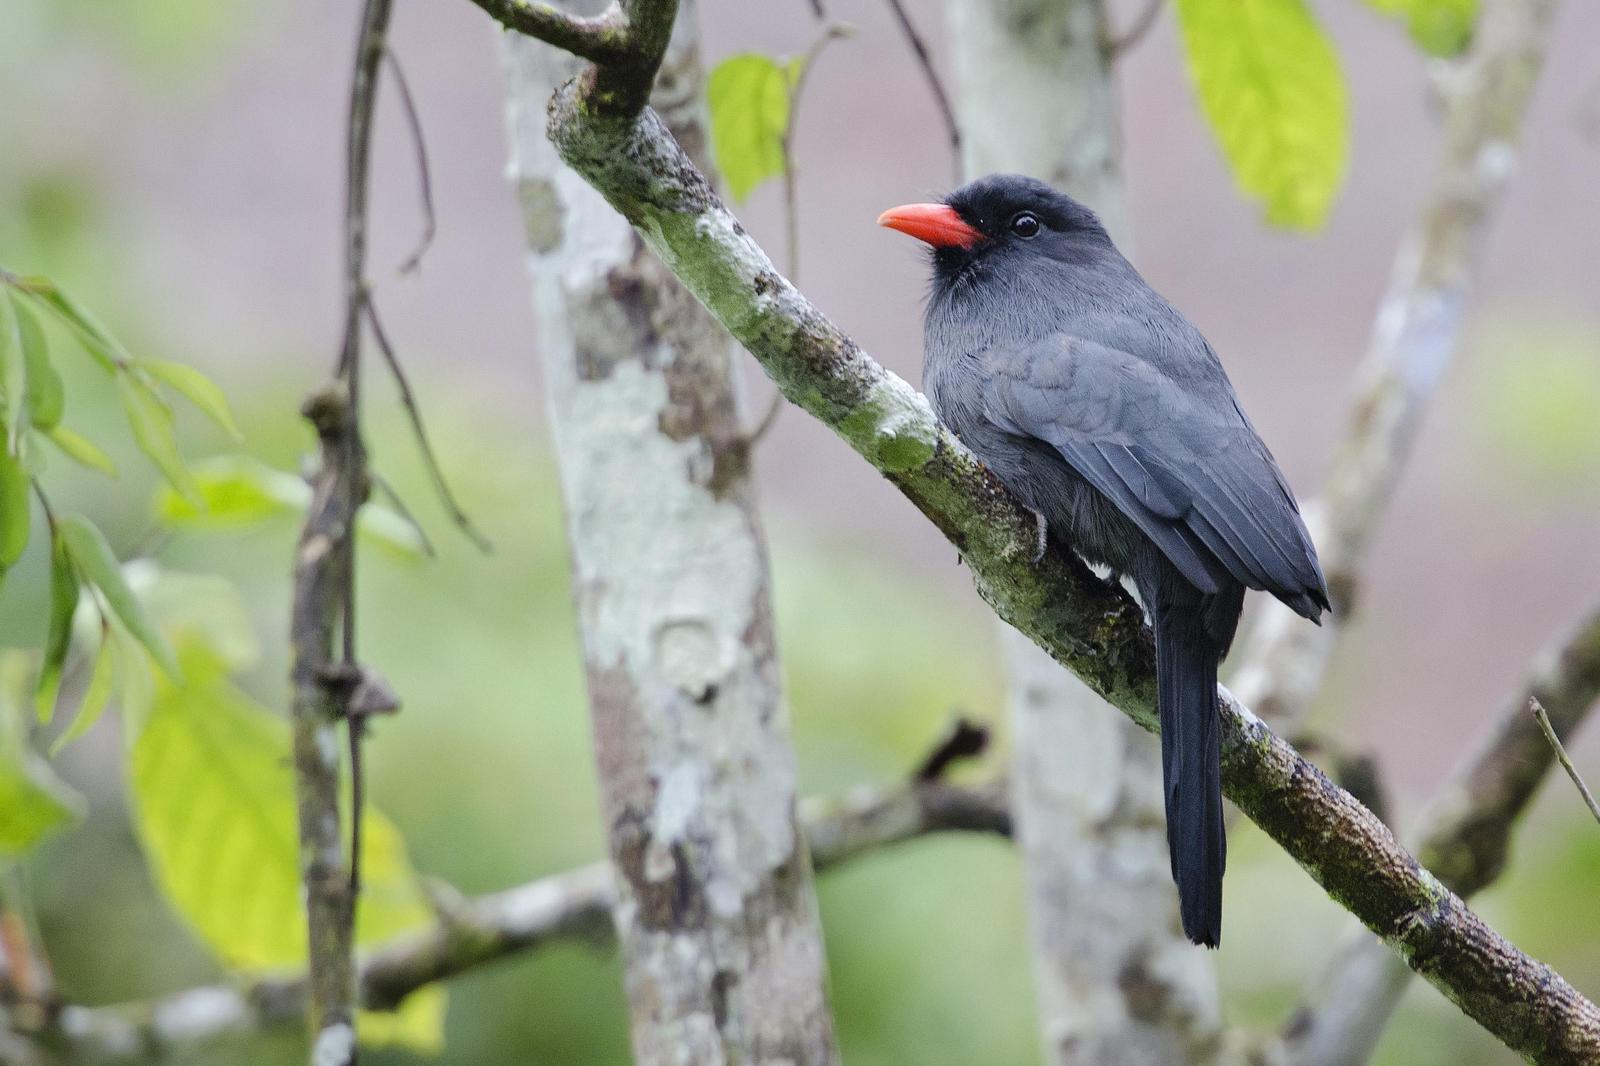 Black-fronted Nunbird Photo by Debra Herst